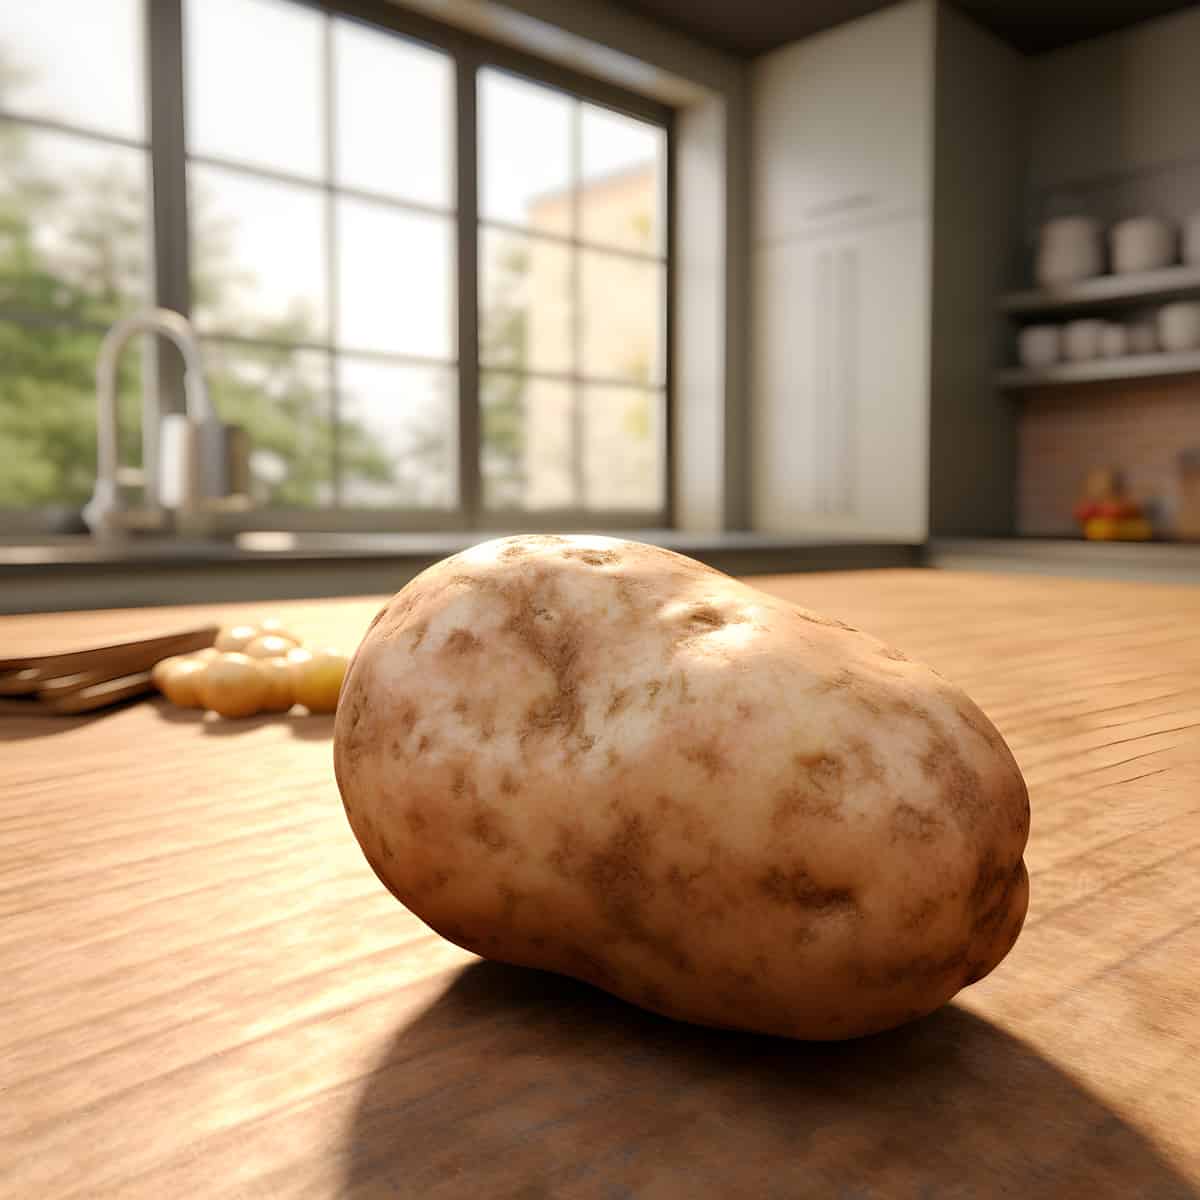 Eigenheimer Potatoes on a kitchen counter